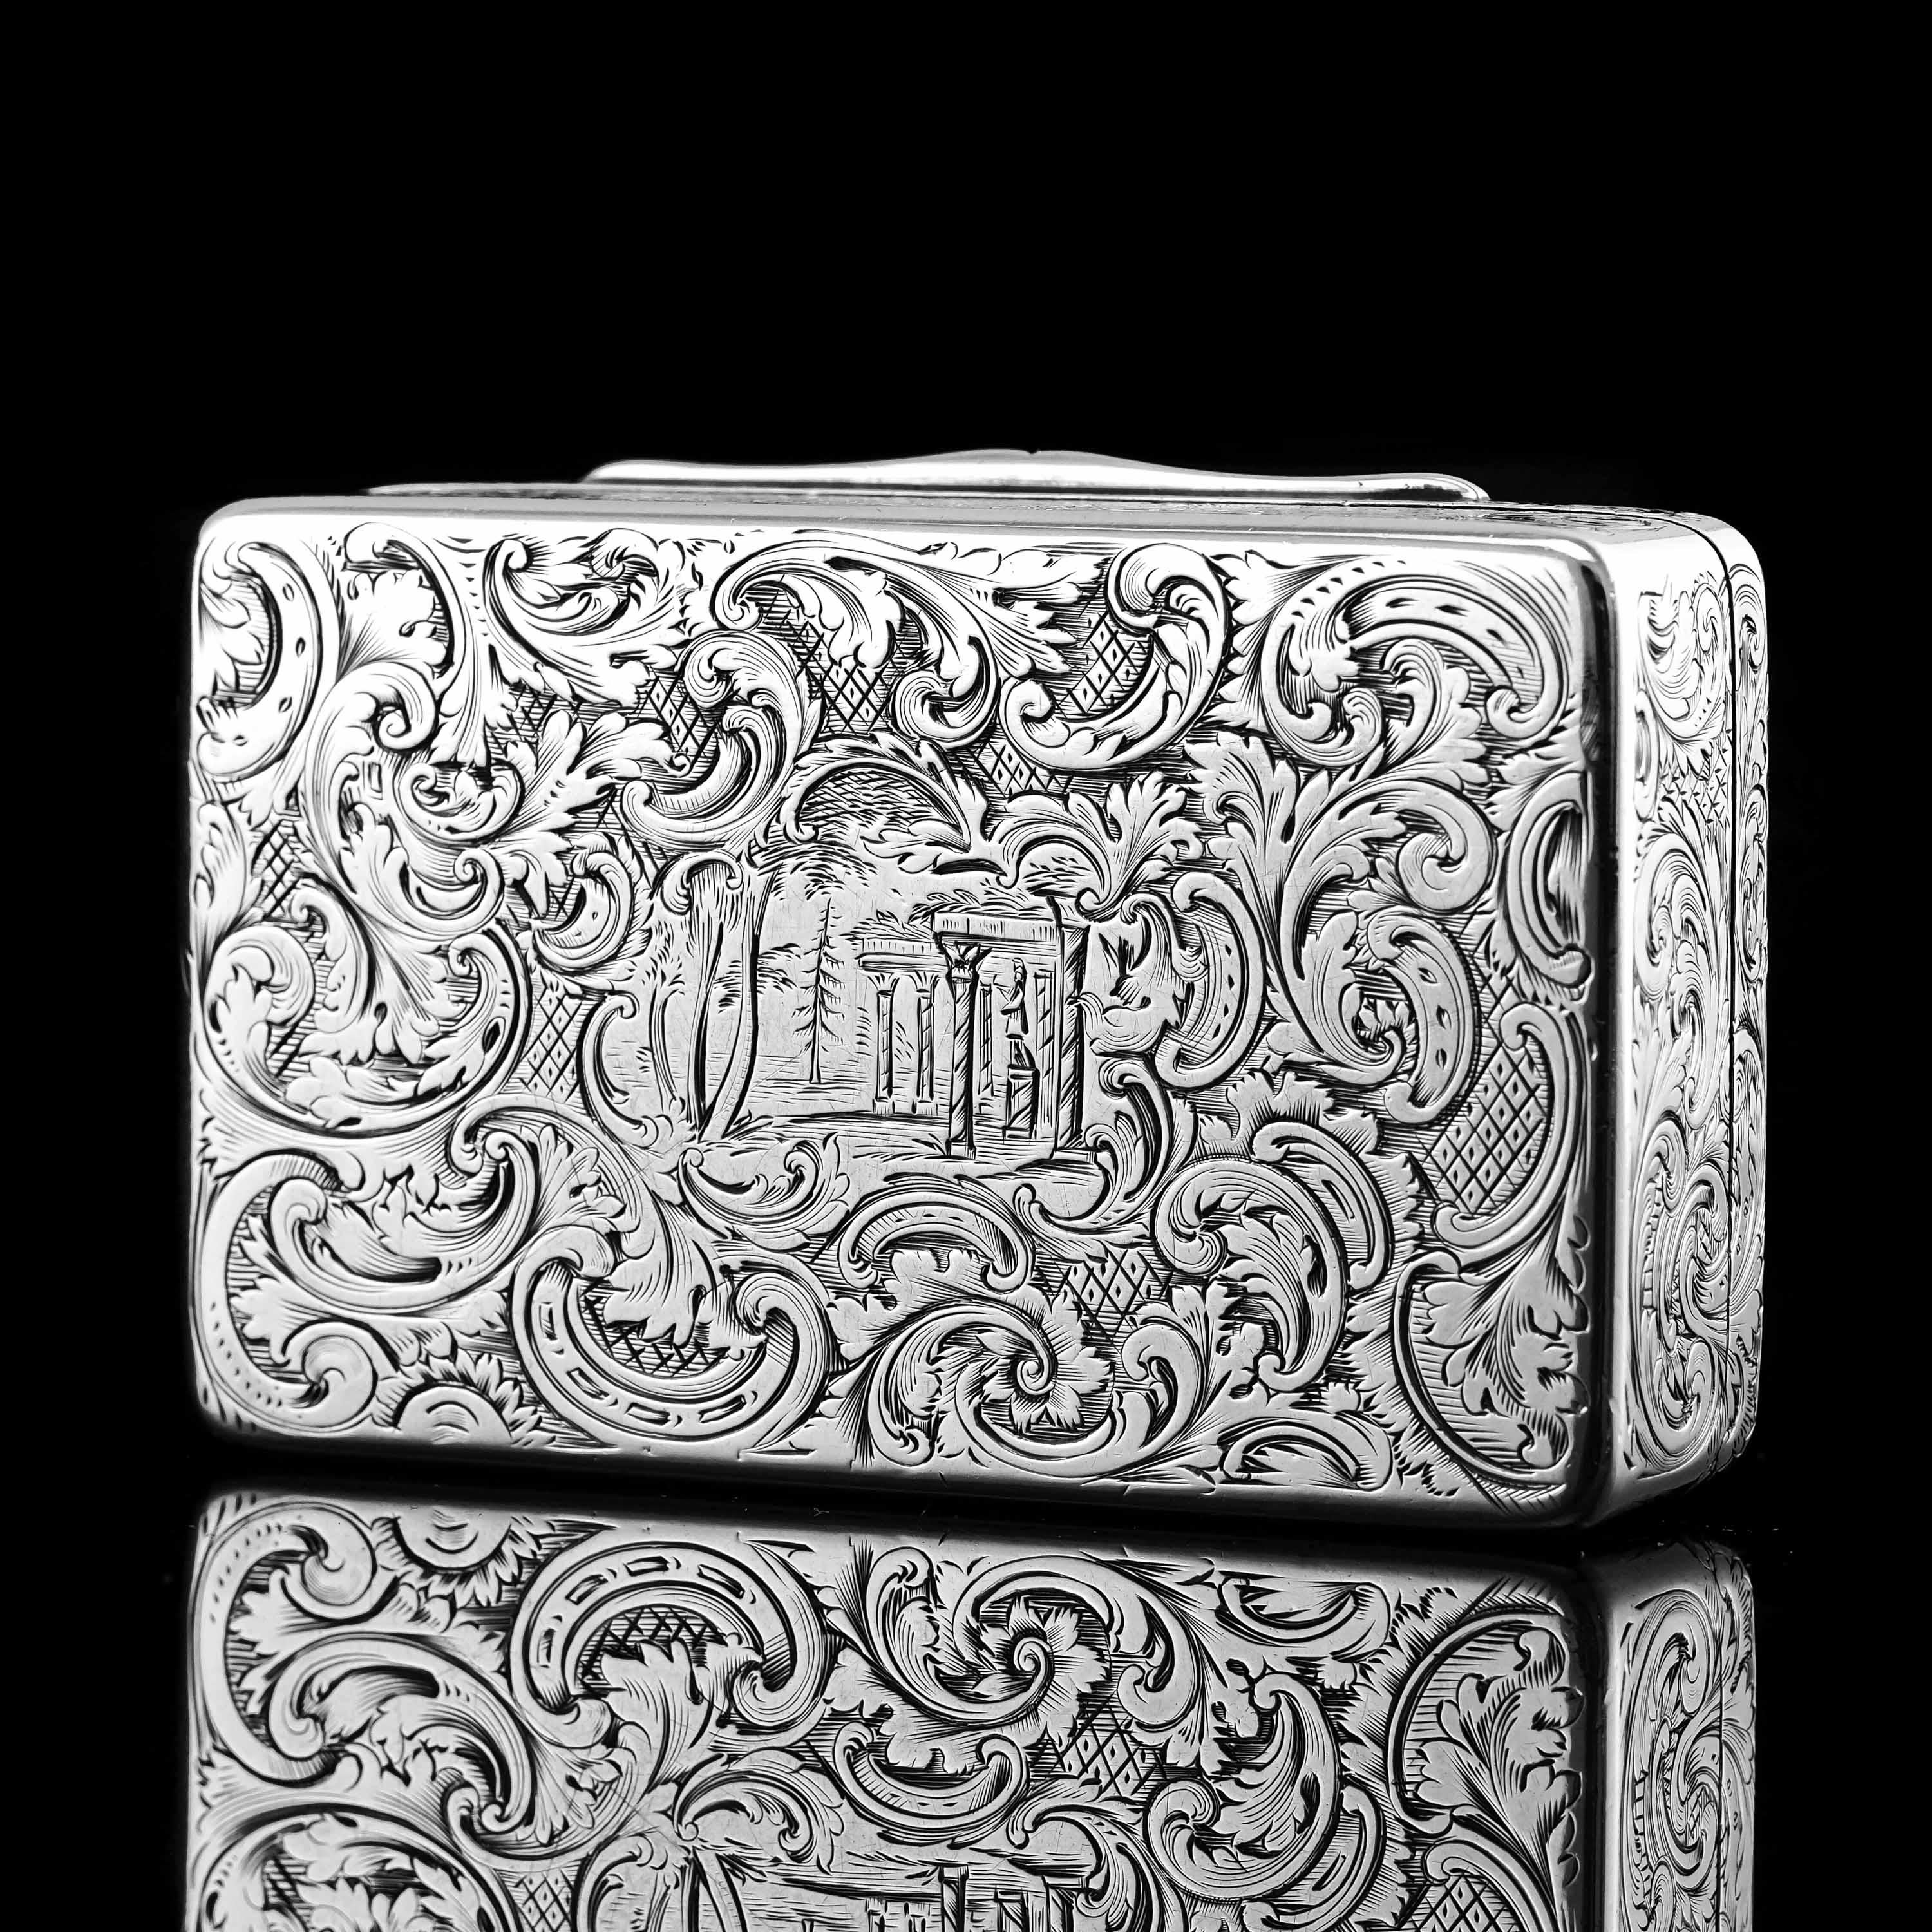 Georgian Antique Silver Snuff Box Hunting Scene Design - 1837 For Sale